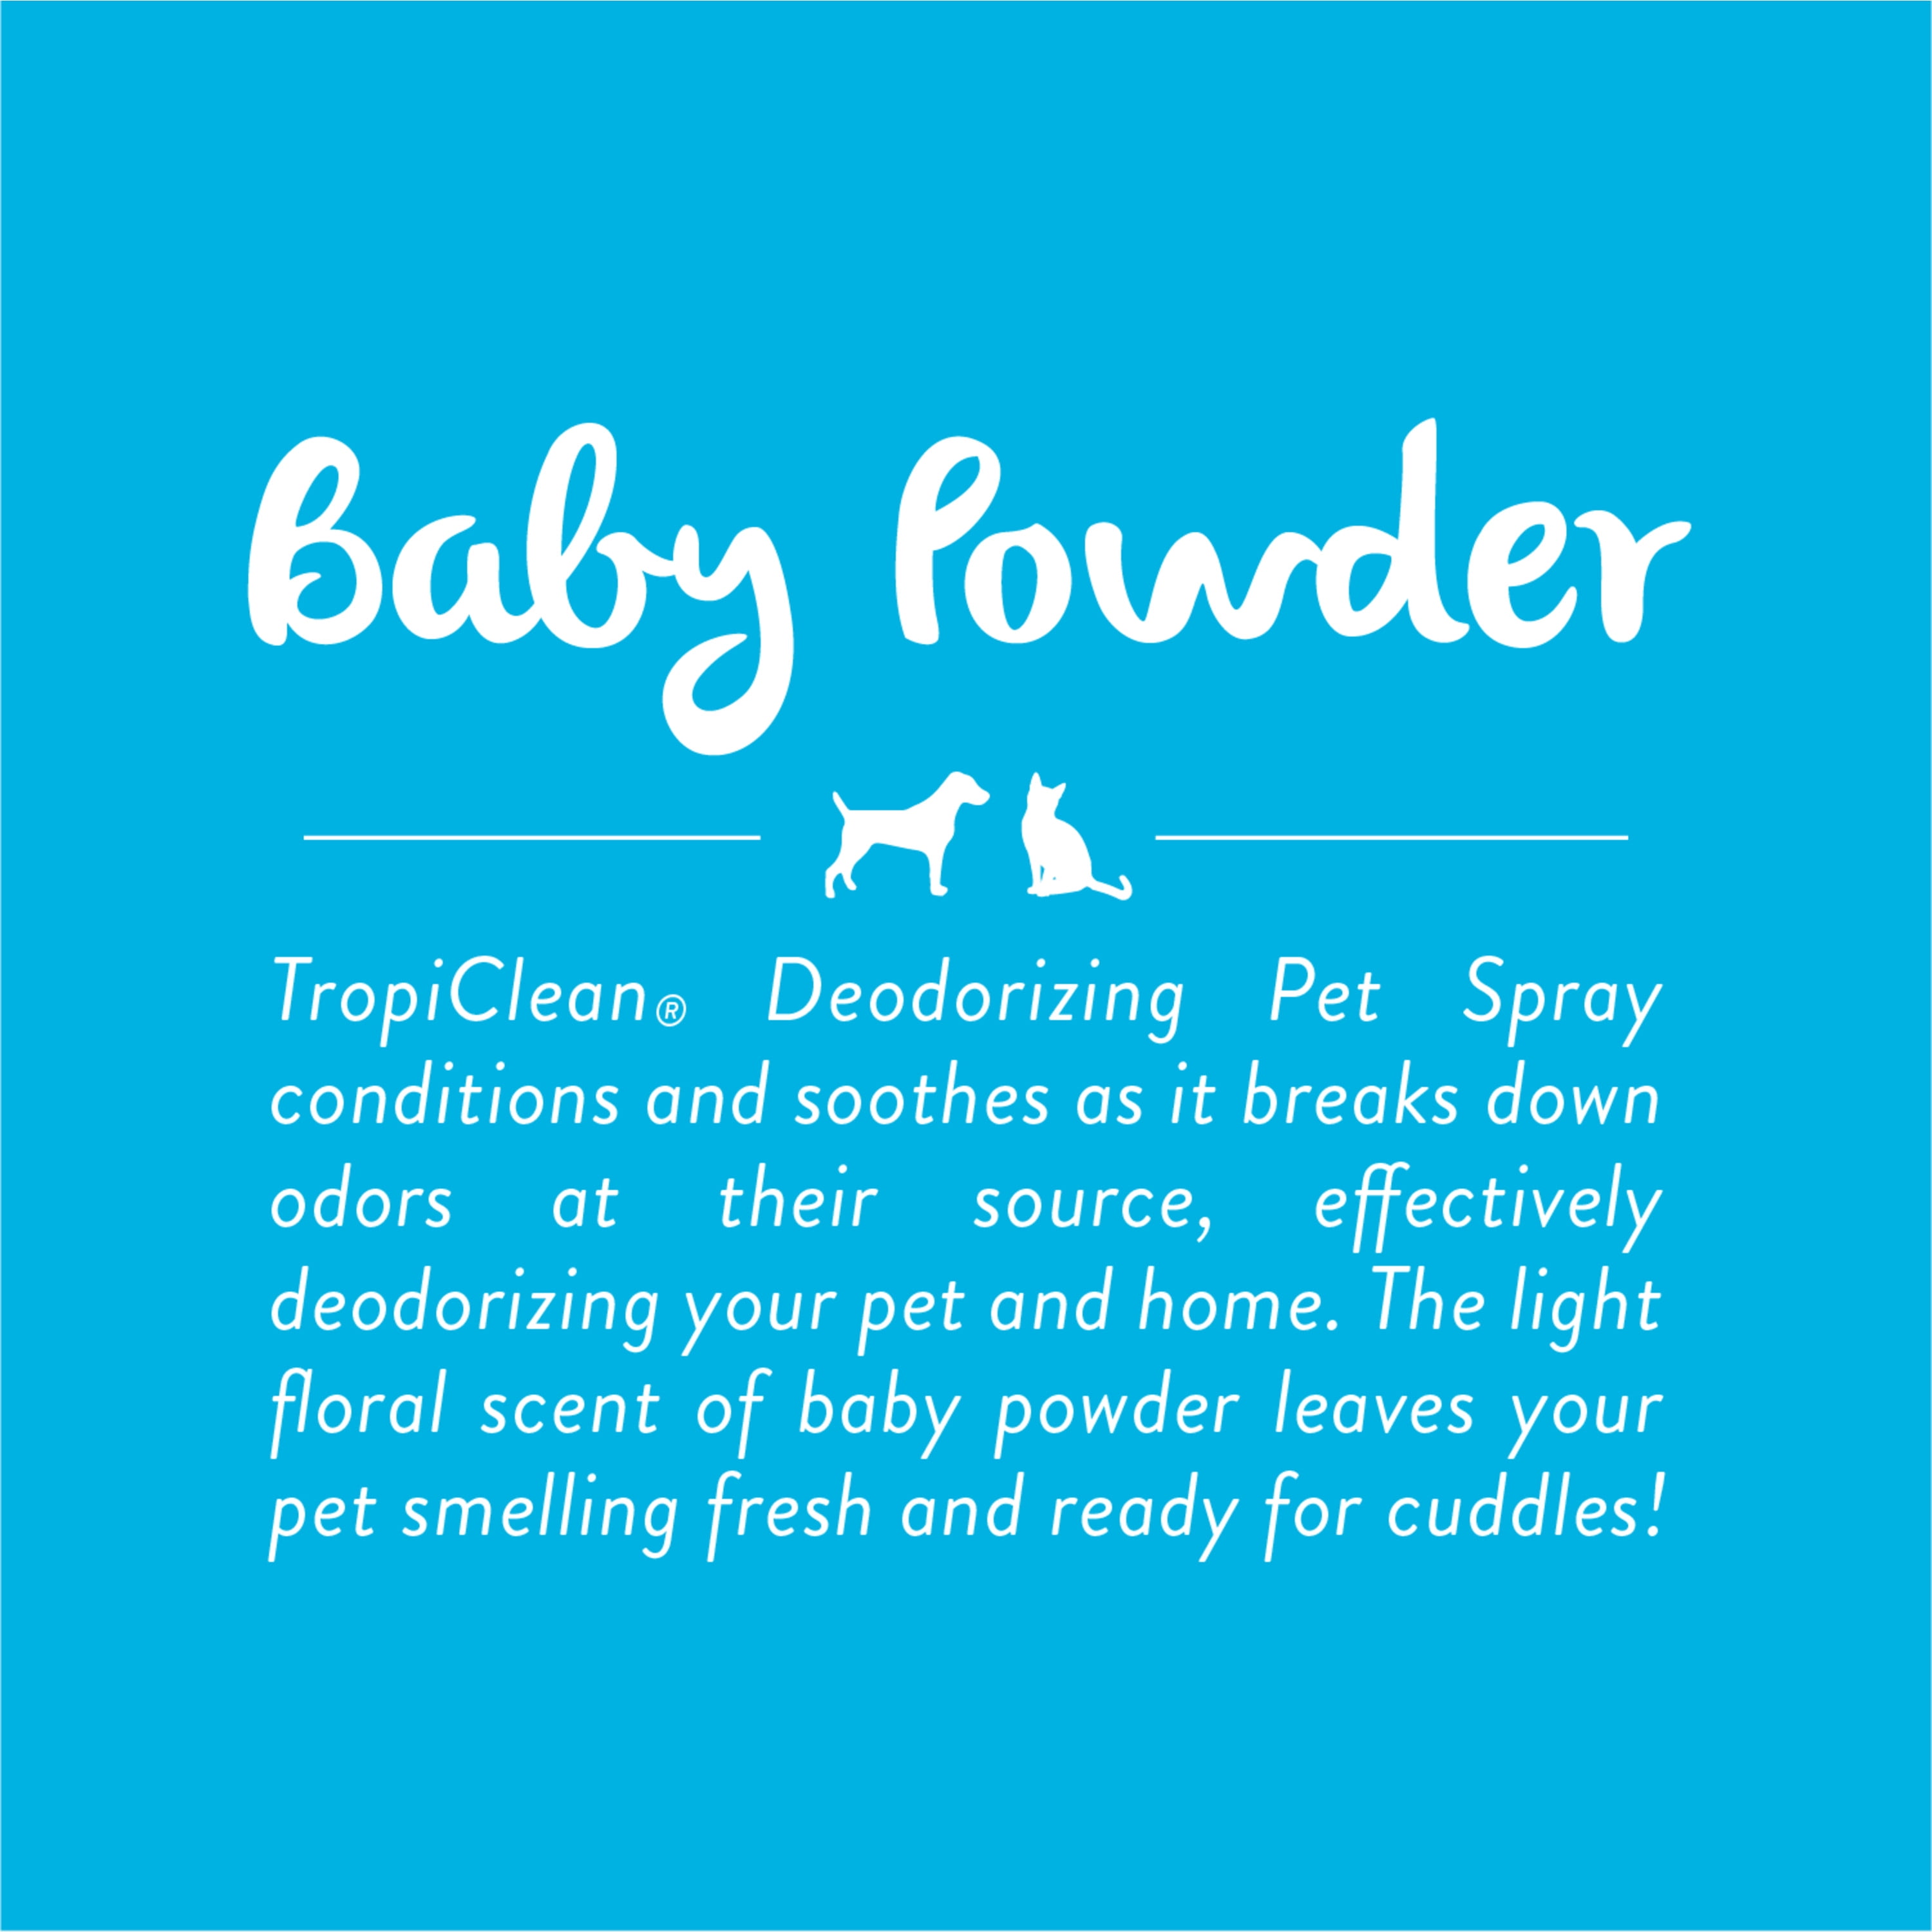 Papaya Mist Deodorizing Pet Spray - Tropiclean